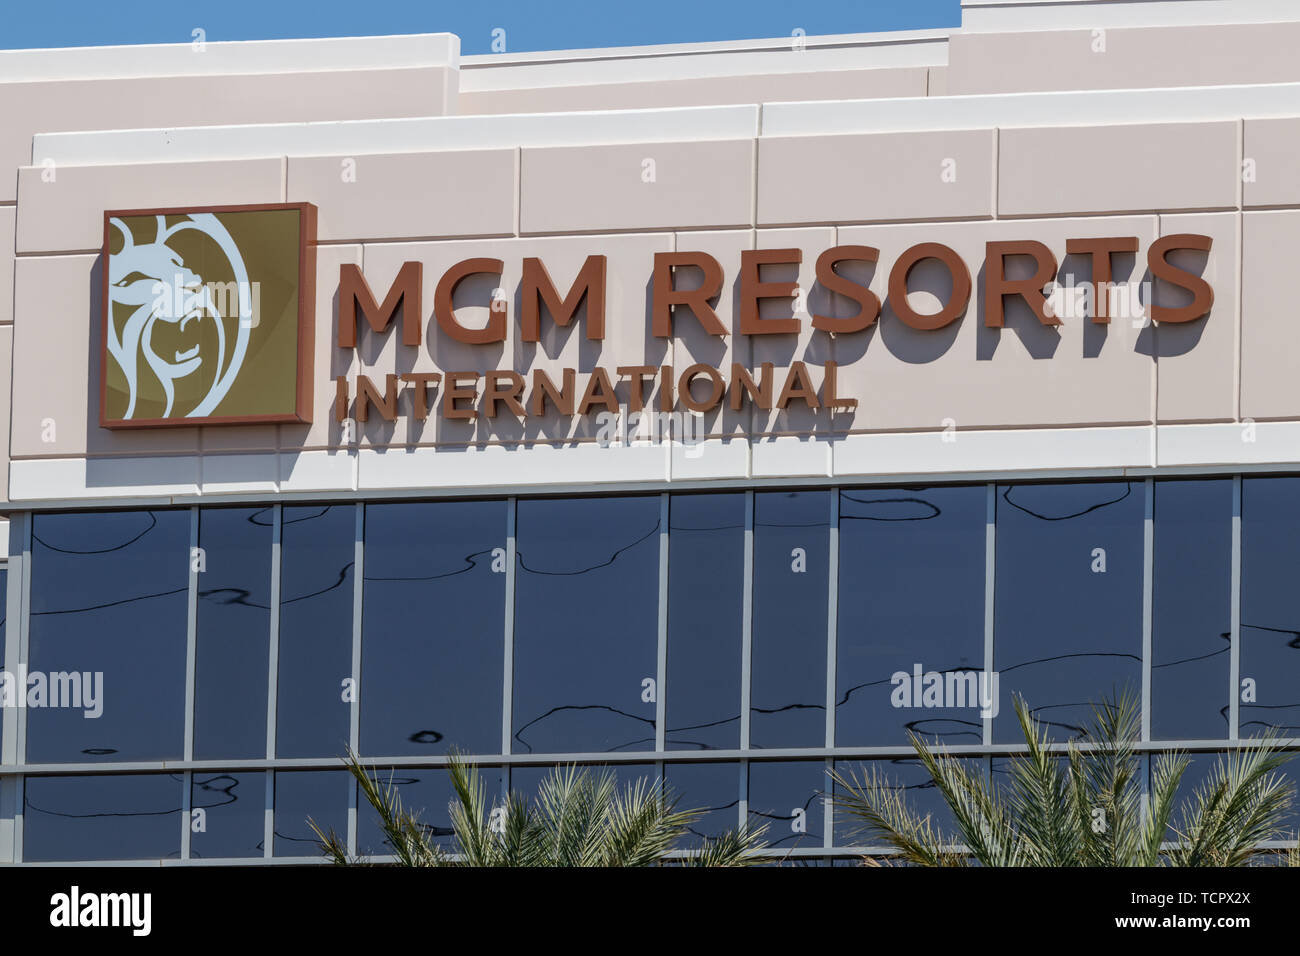 MGM Resorts International Büro. MGM Resorts International ist ein globales Hotel- und Unterhaltungsunternehmen. Stockfoto